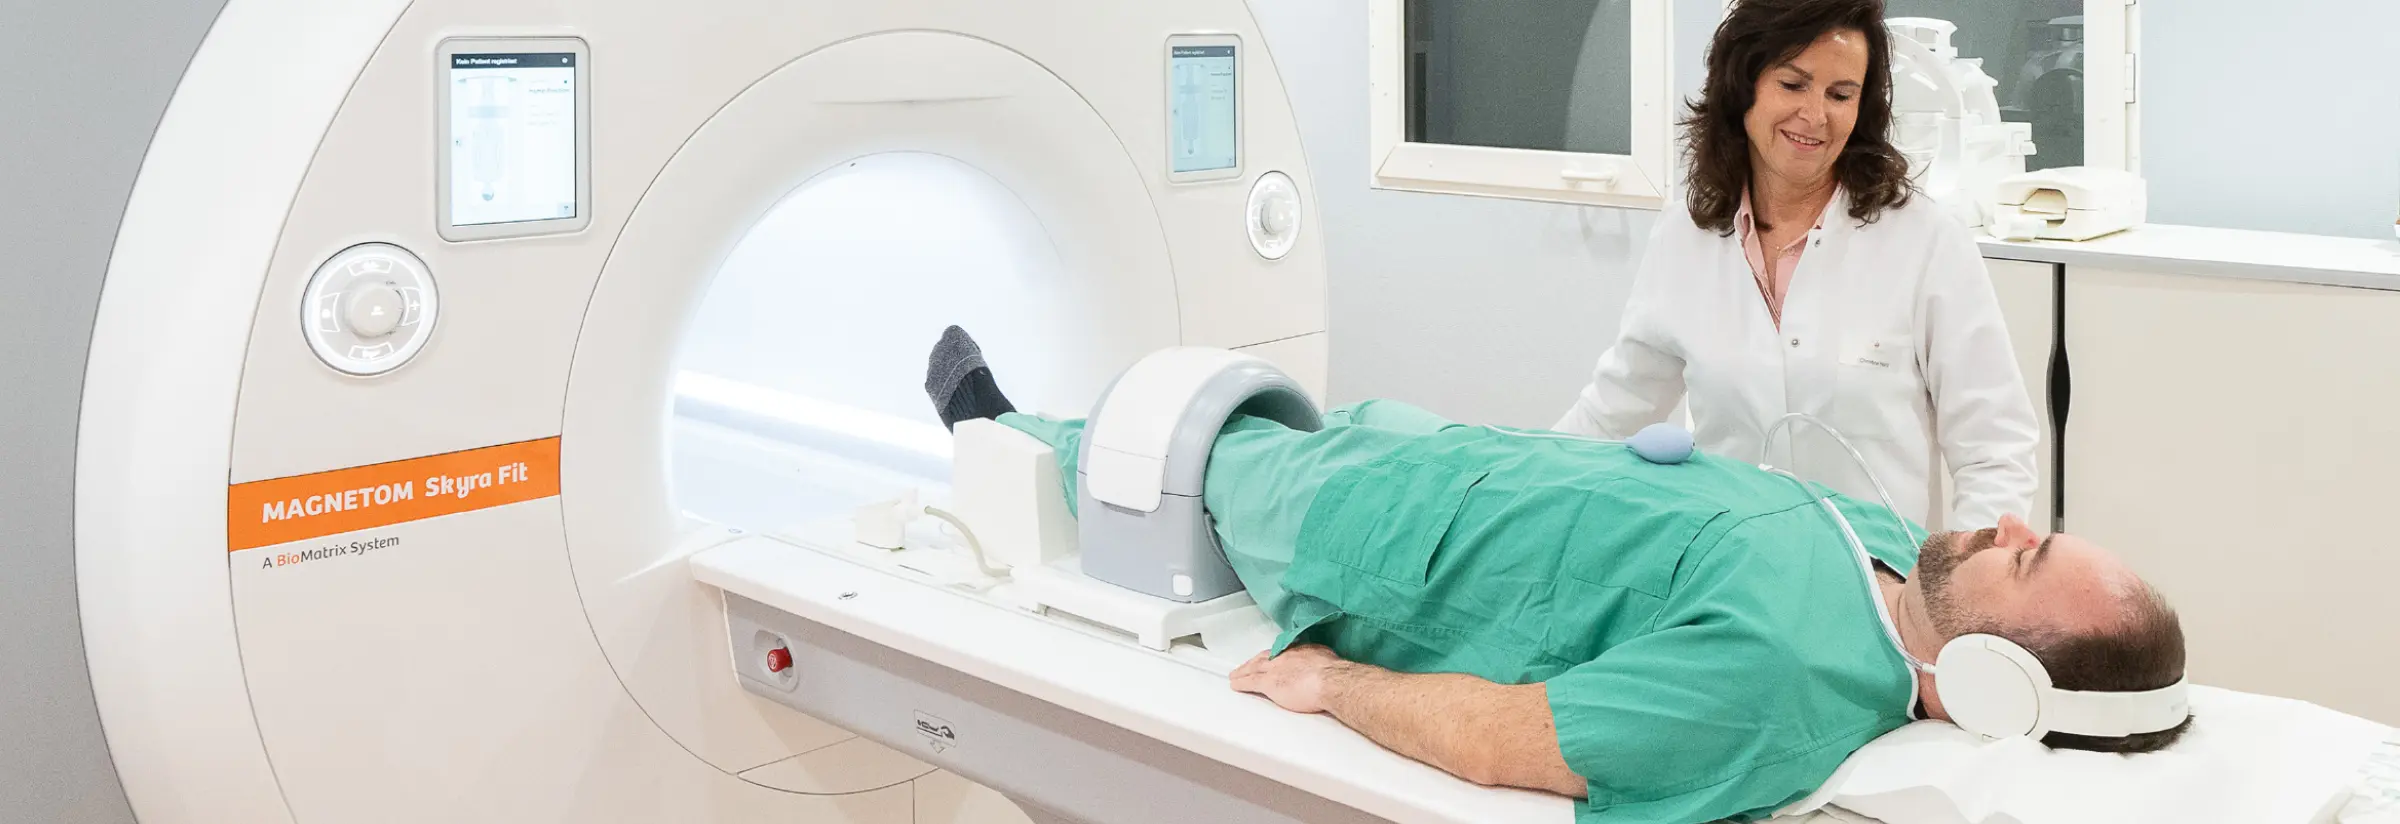 Radiologie IM ETHIANUM - Geräte der neuesten Generation für präzise Diagnostik